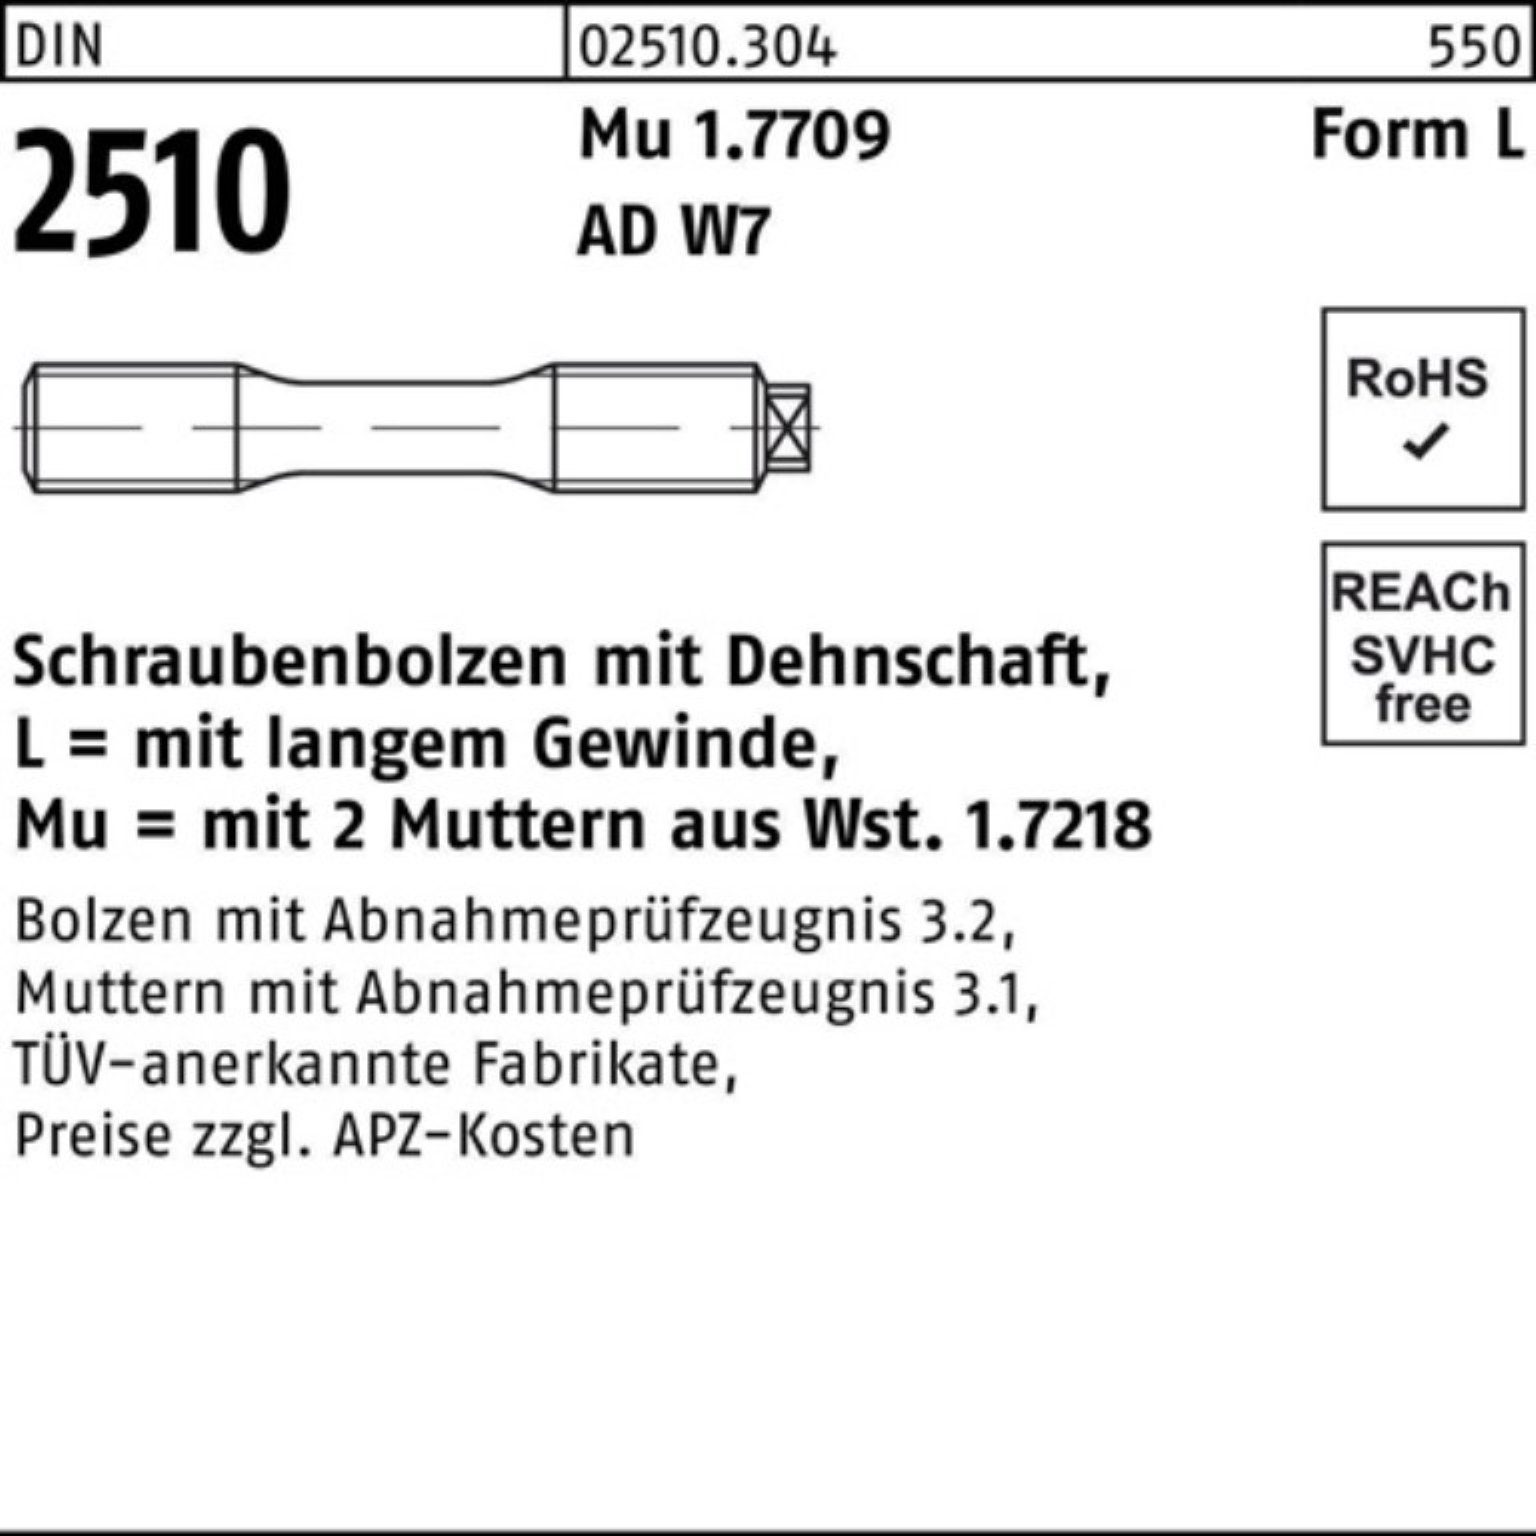 LM 110 DIN Pack Dehnschaft/2Muttern Schraubenbolzen Mu 100er Reyher 20x 2510 Muttern